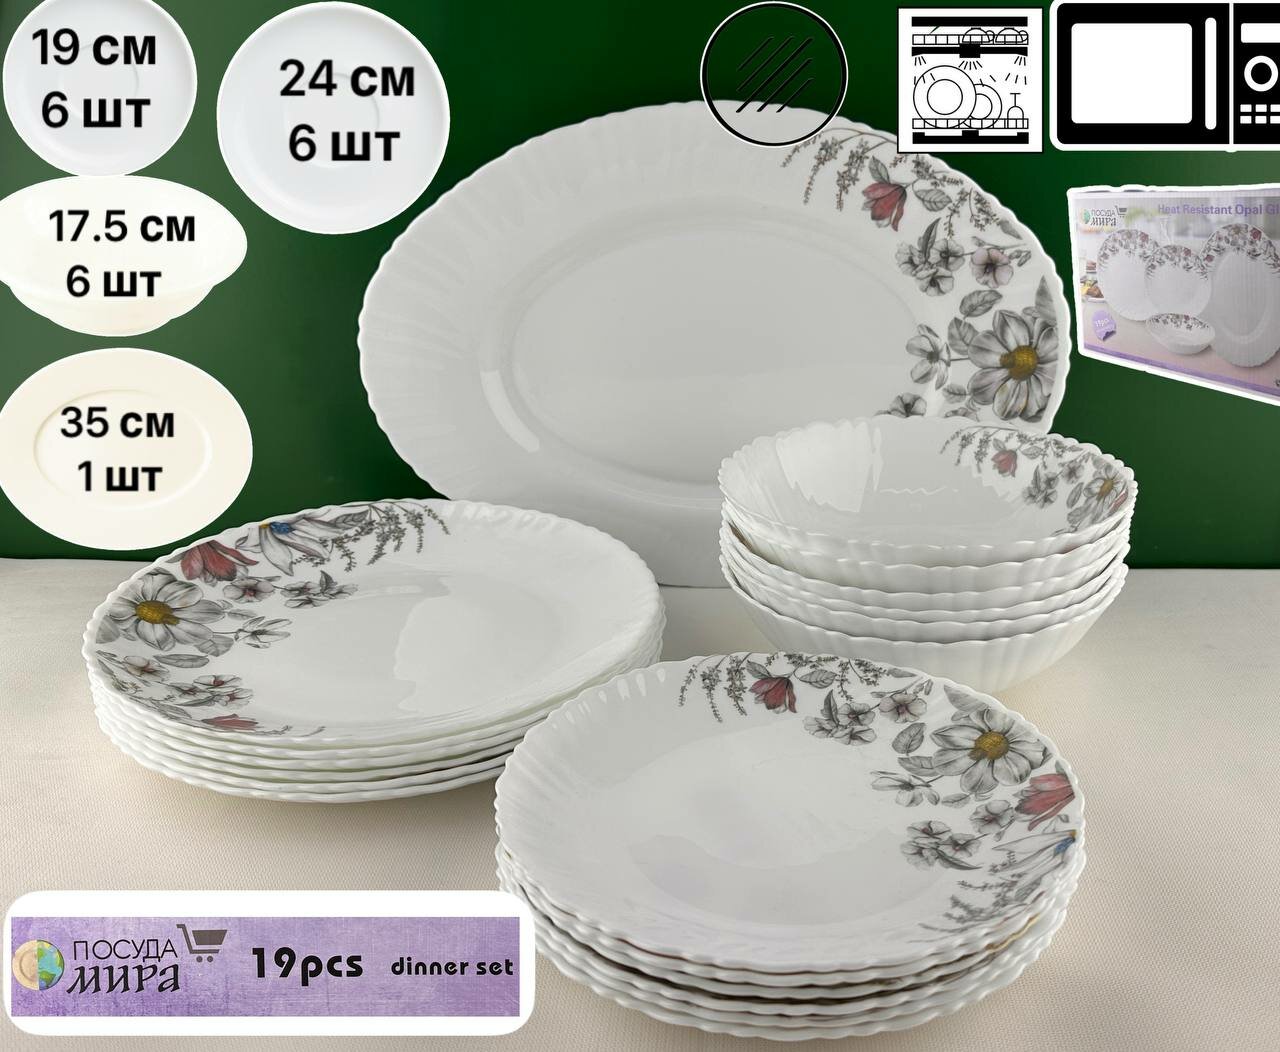 Набор столовой посуды "Посуда Мира" из 19 предметов,6 персон,7247